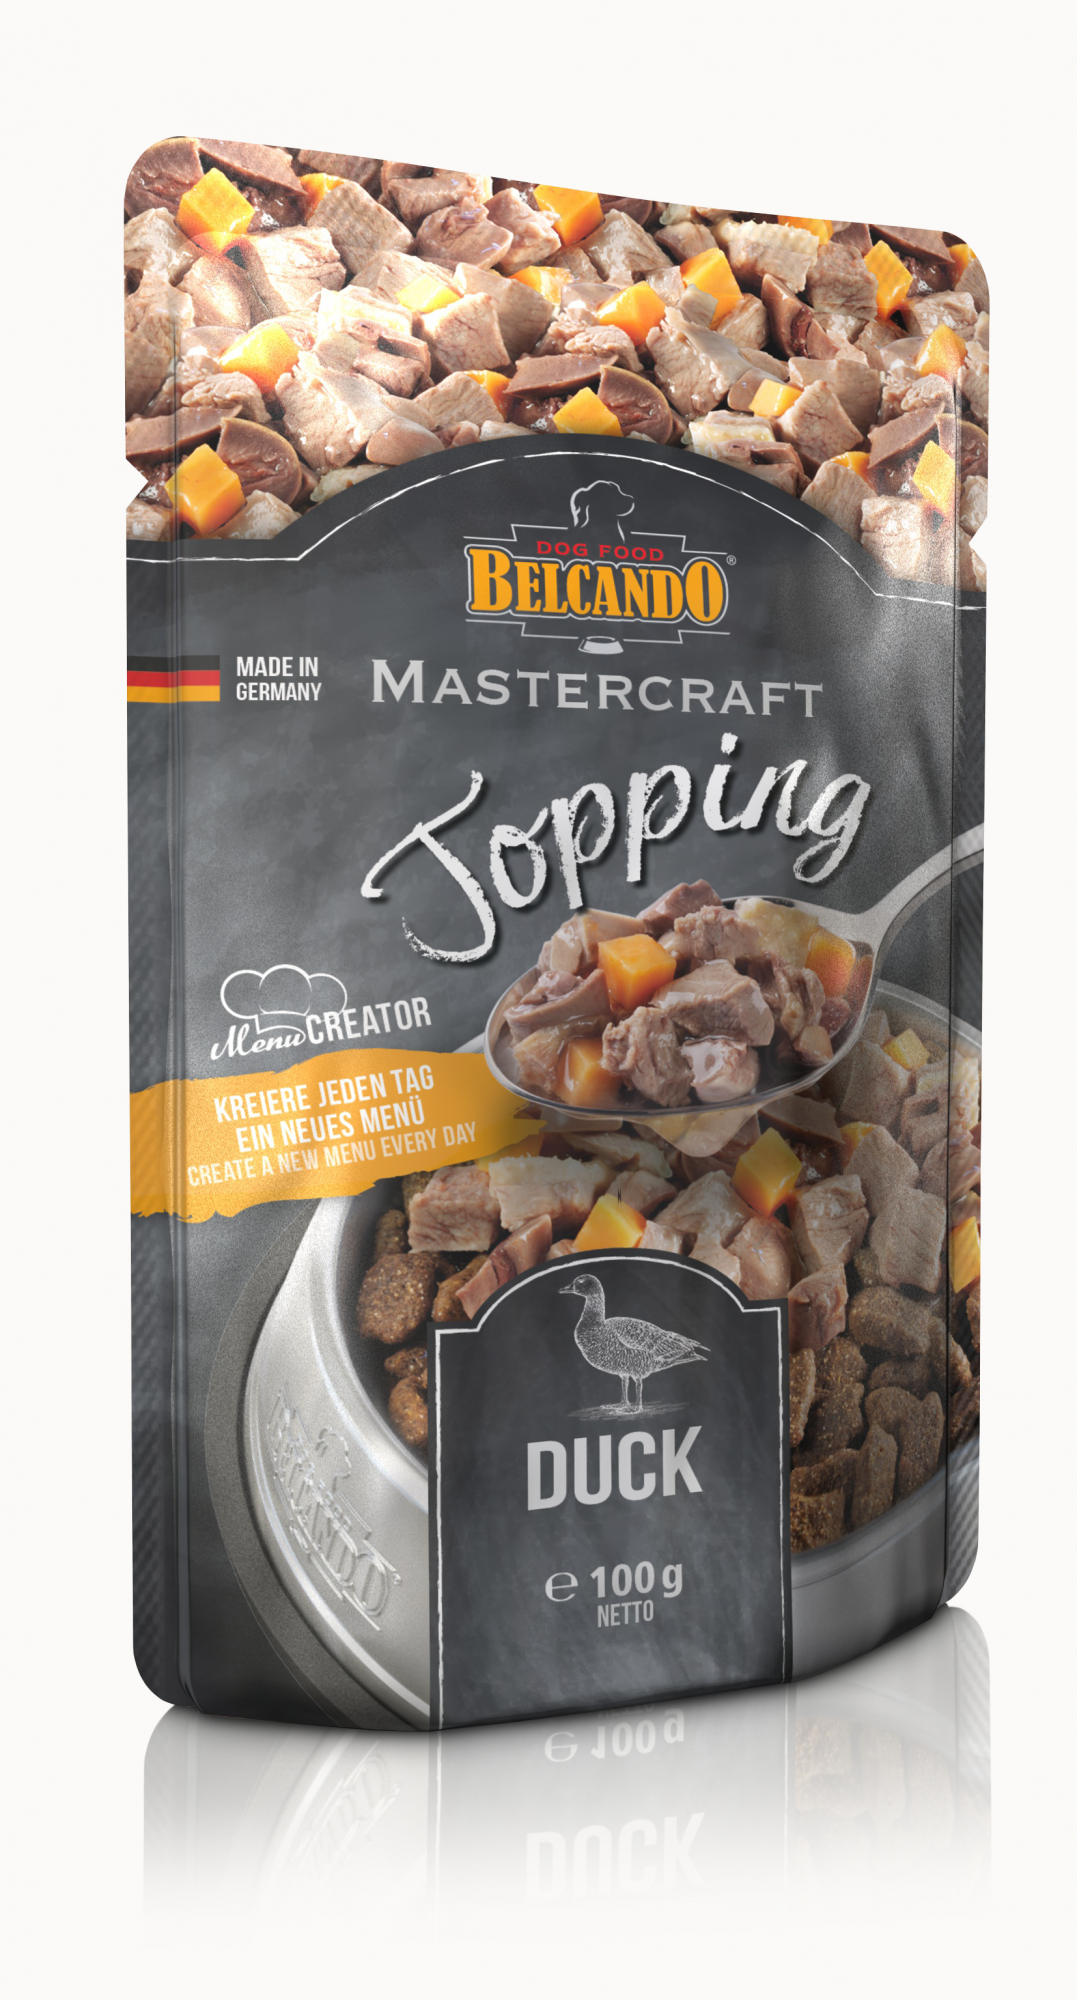 BELCANDO Mastercraft Topping con pato para perros